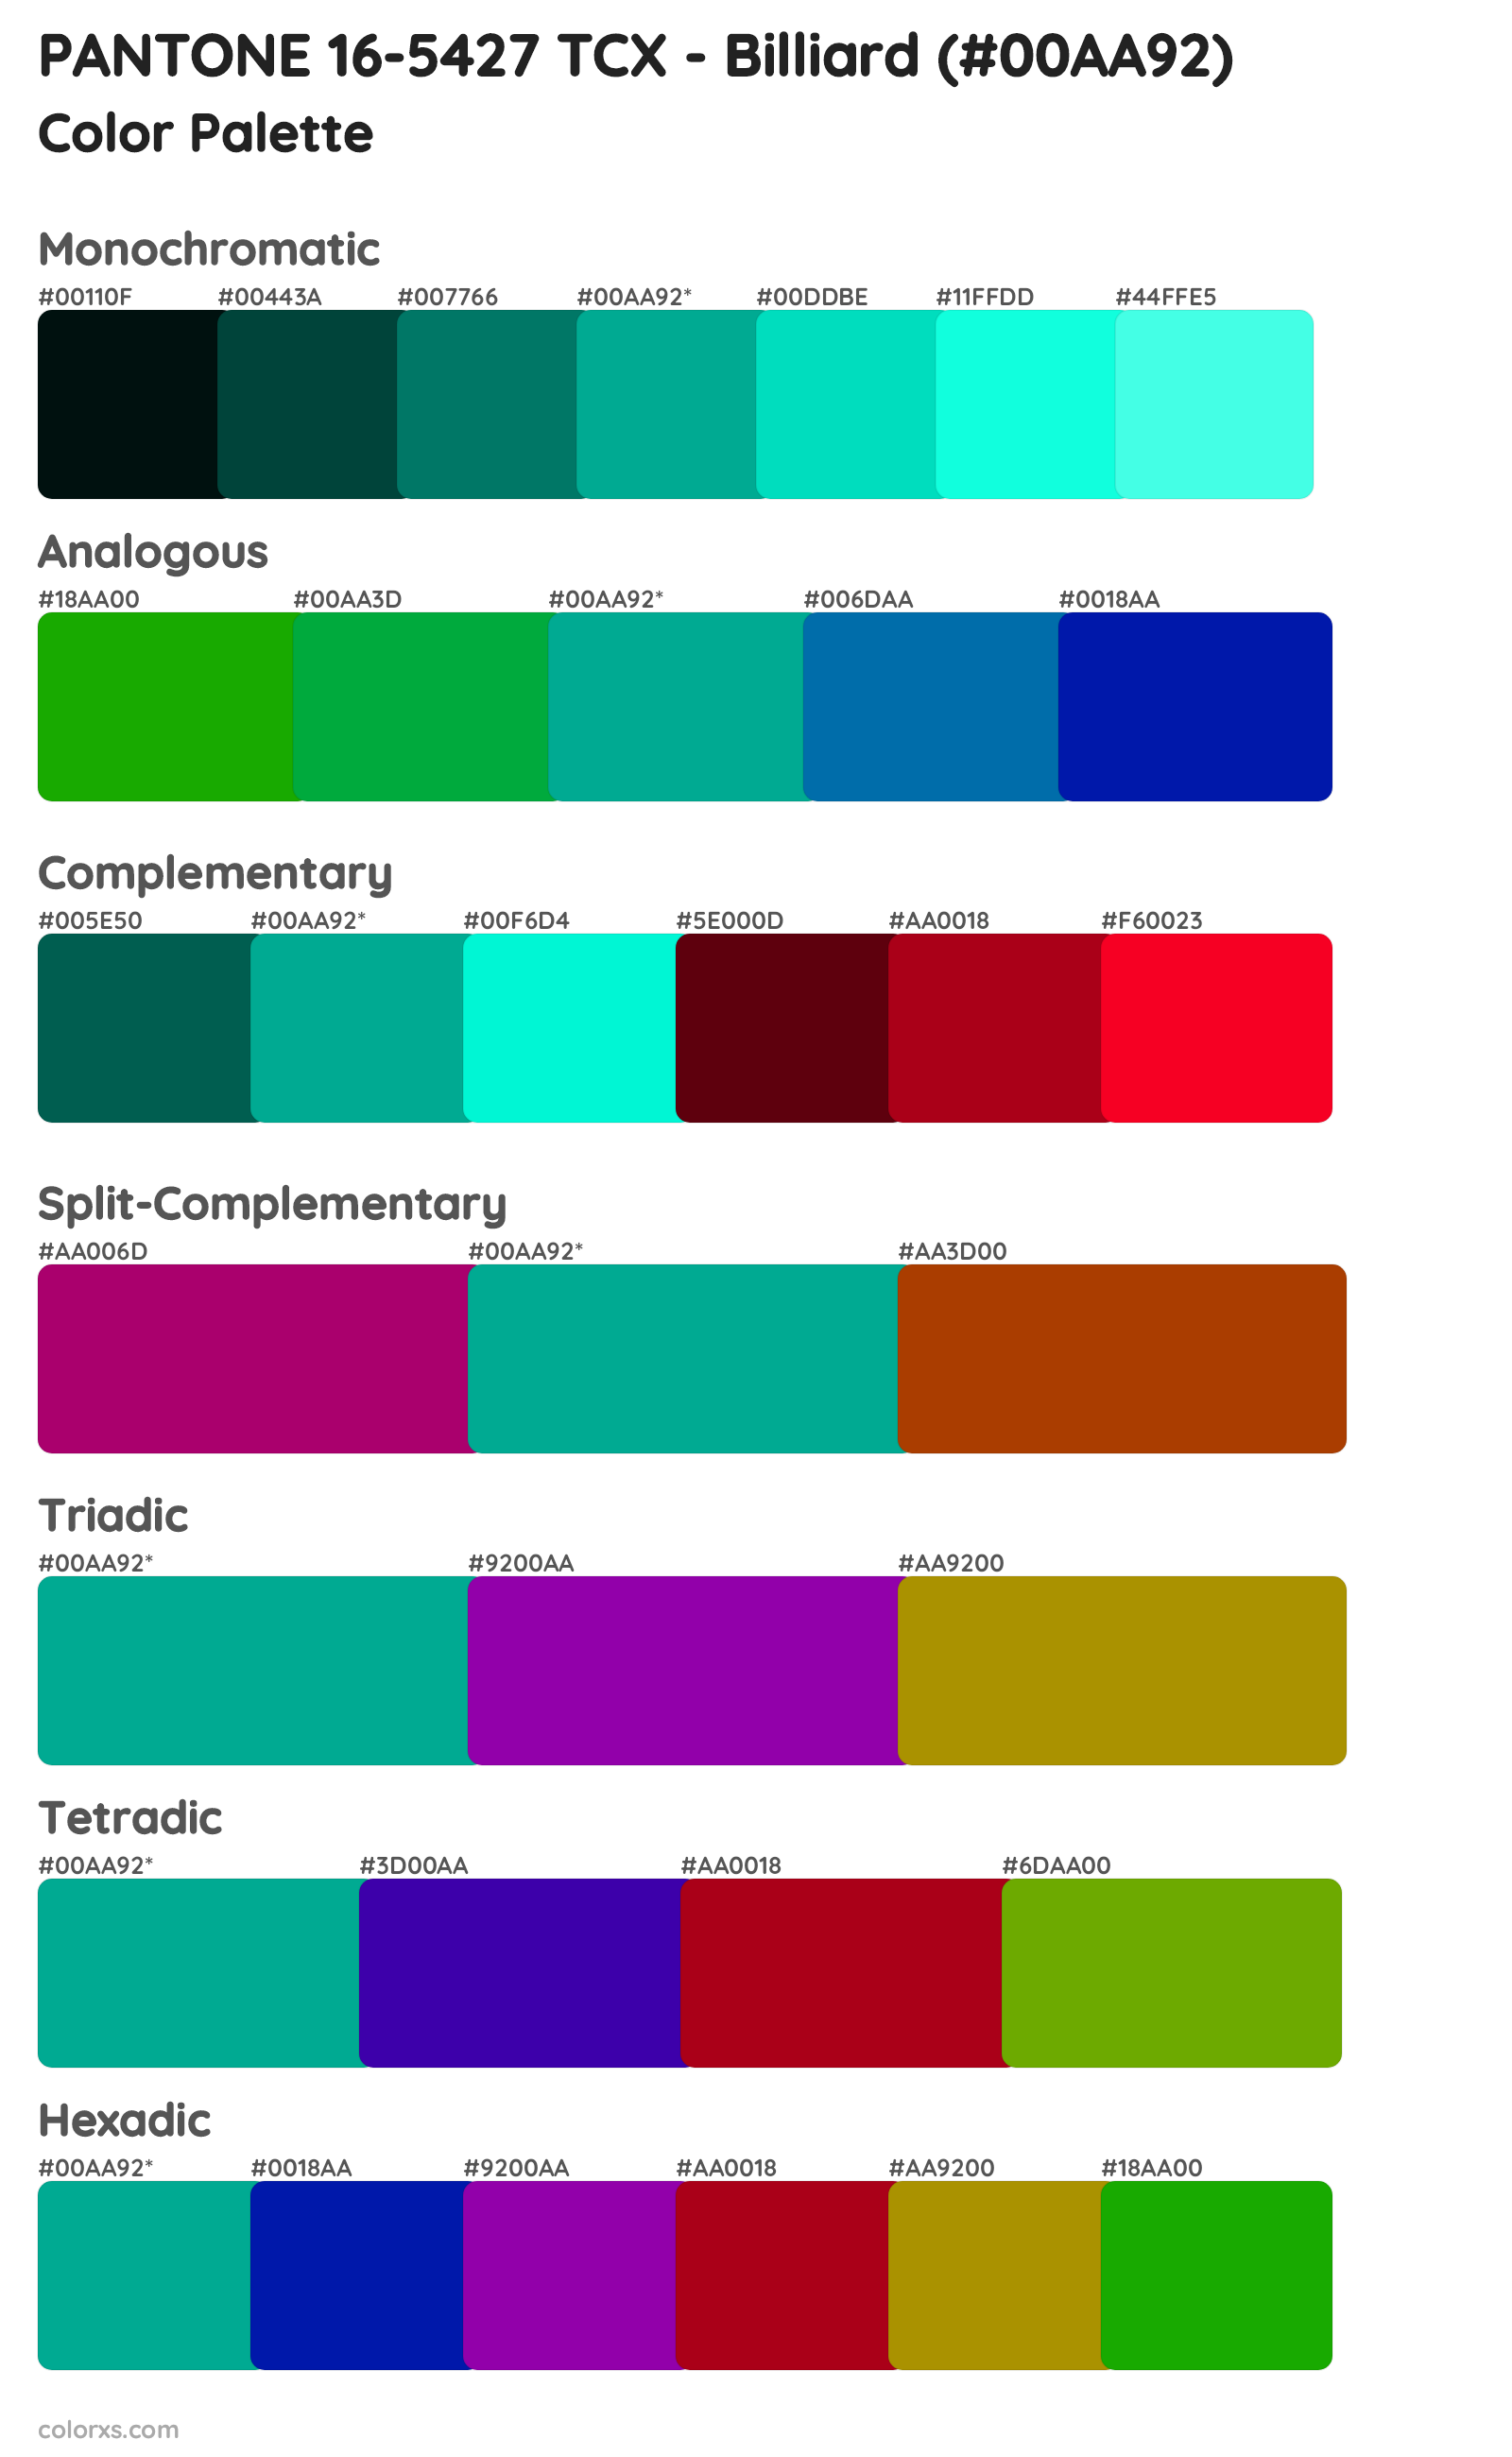 PANTONE 16-5427 TCX - Billiard Color Scheme Palettes